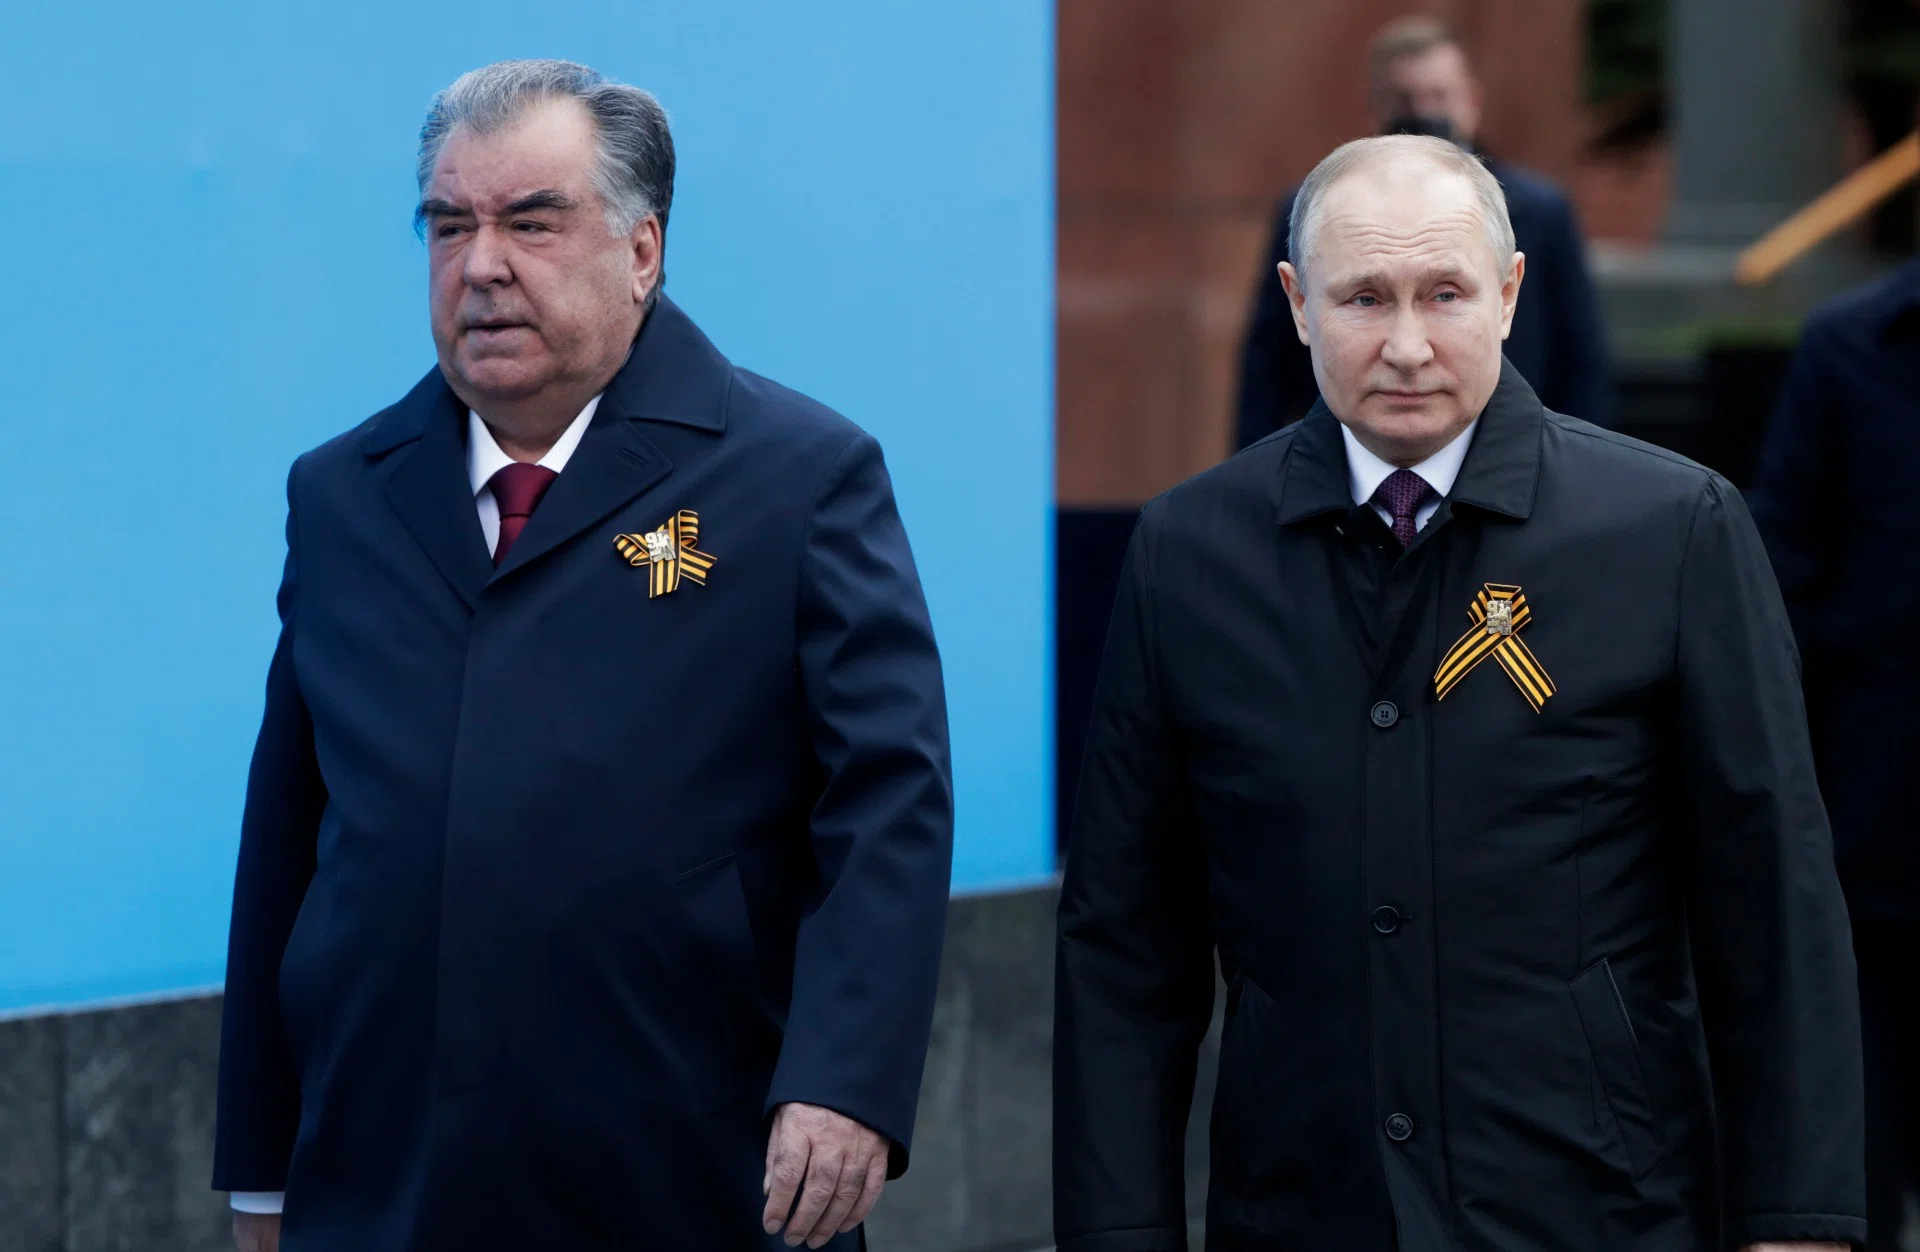 Владимир Путин и президент Таджикистана Эмомали Рахмон